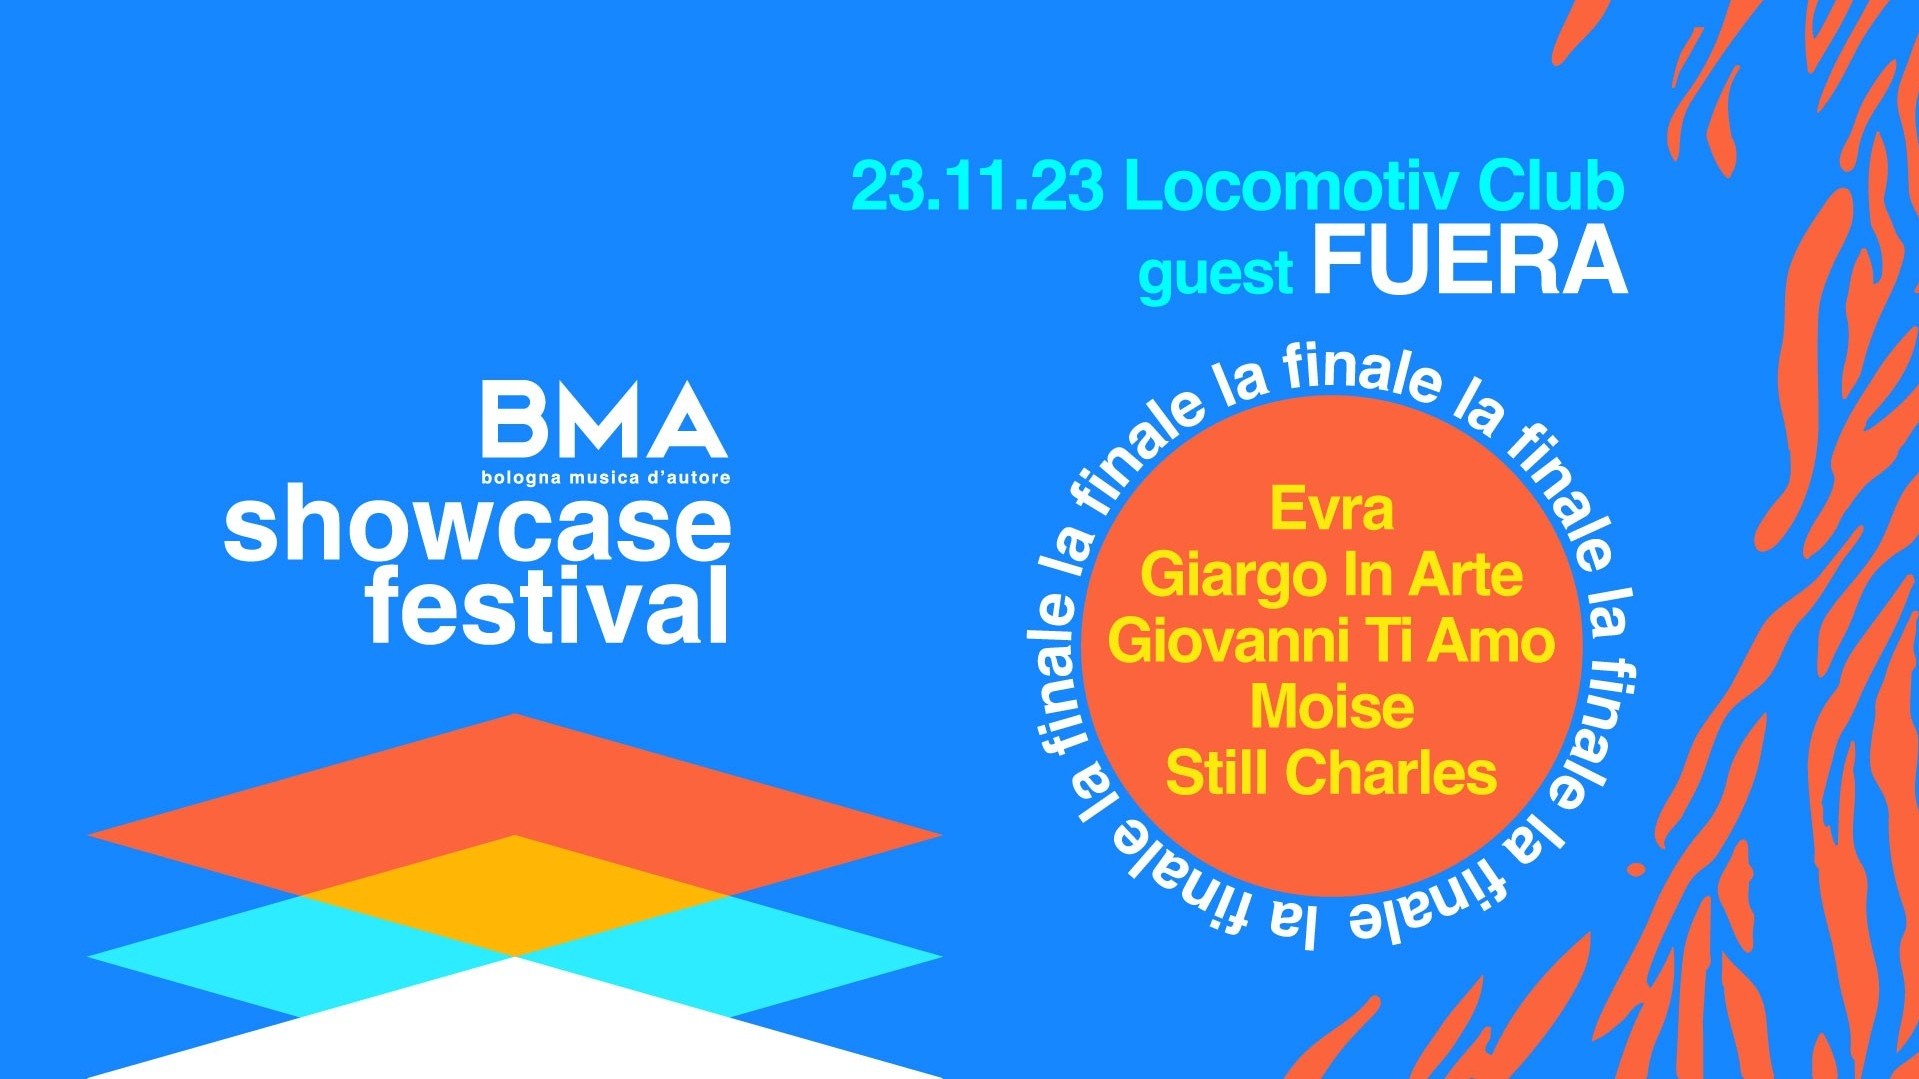 Bma showcase festival w/ Fuera